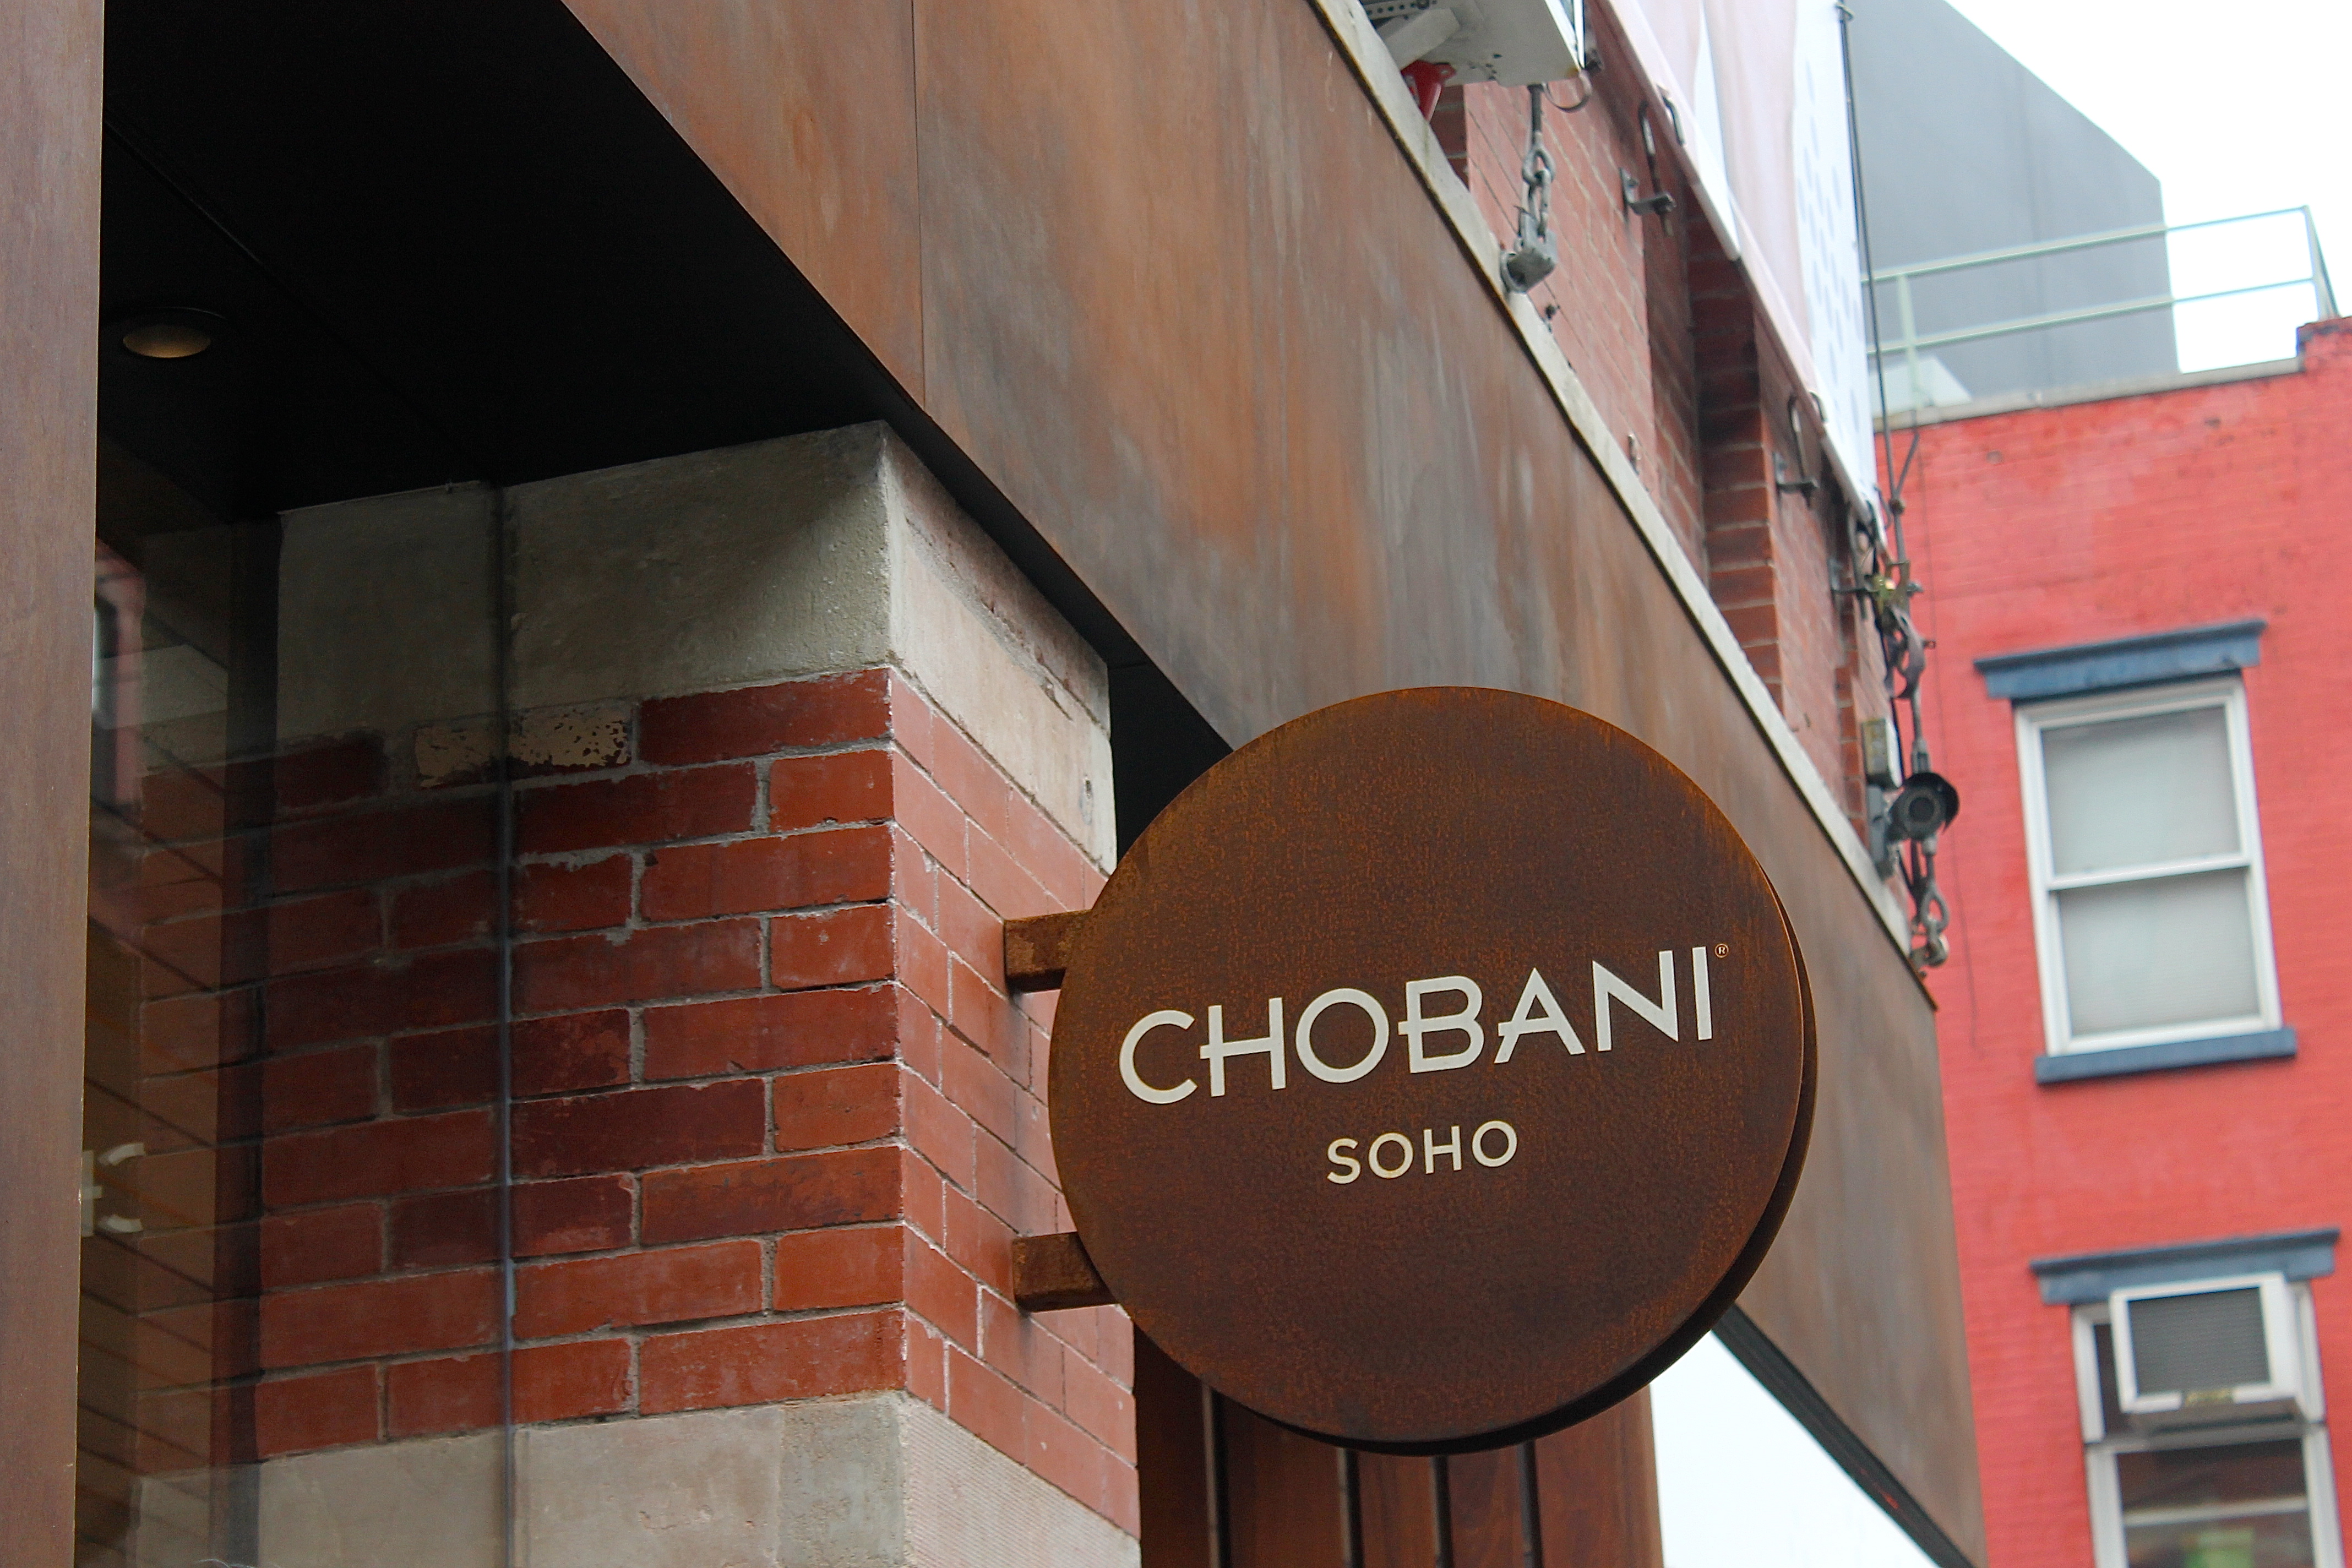 Chobani Soho